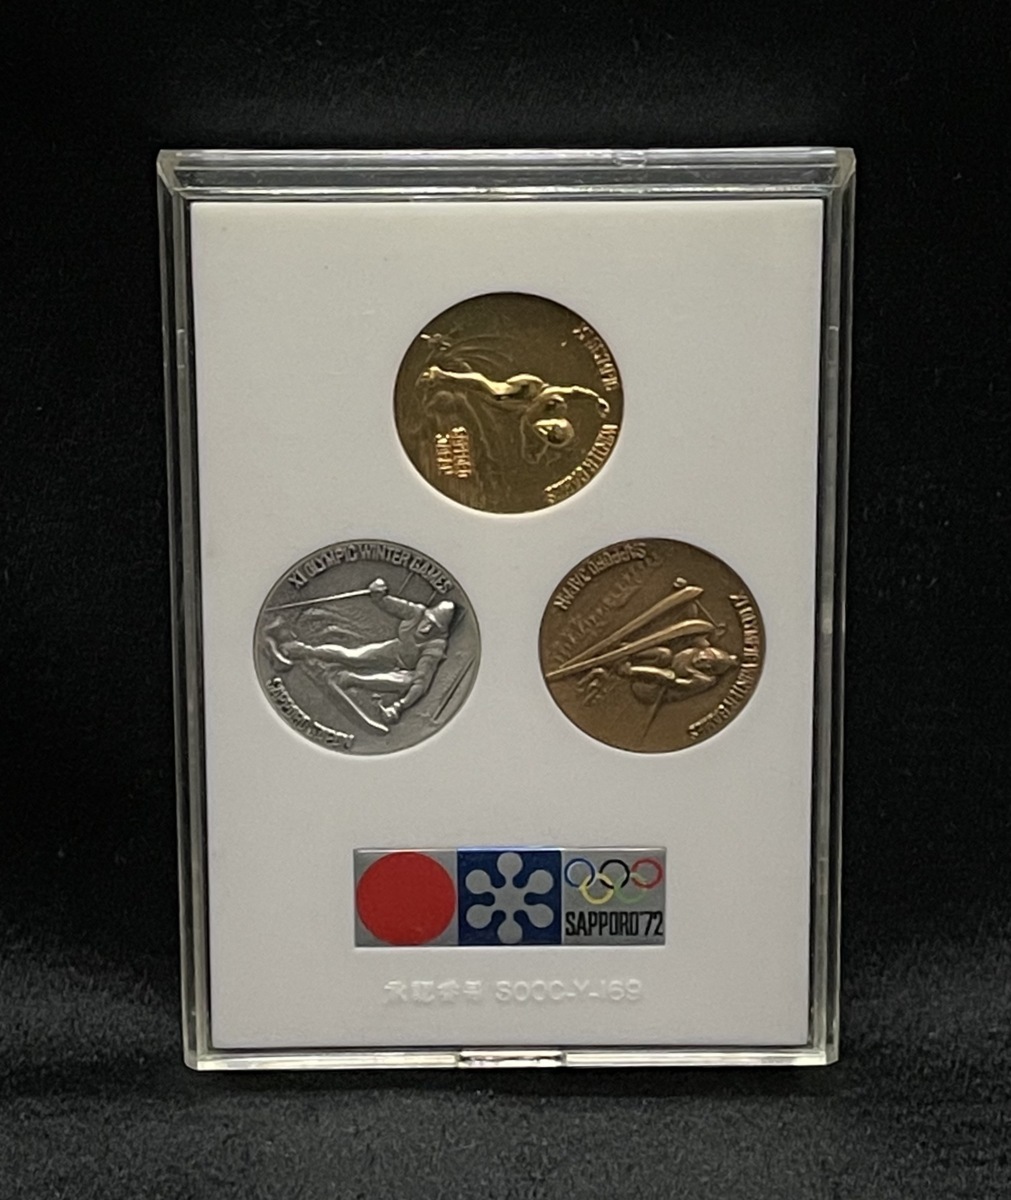 ヤフオク! -札幌オリンピック冬季大会1972記念メダルの中古品・新品 